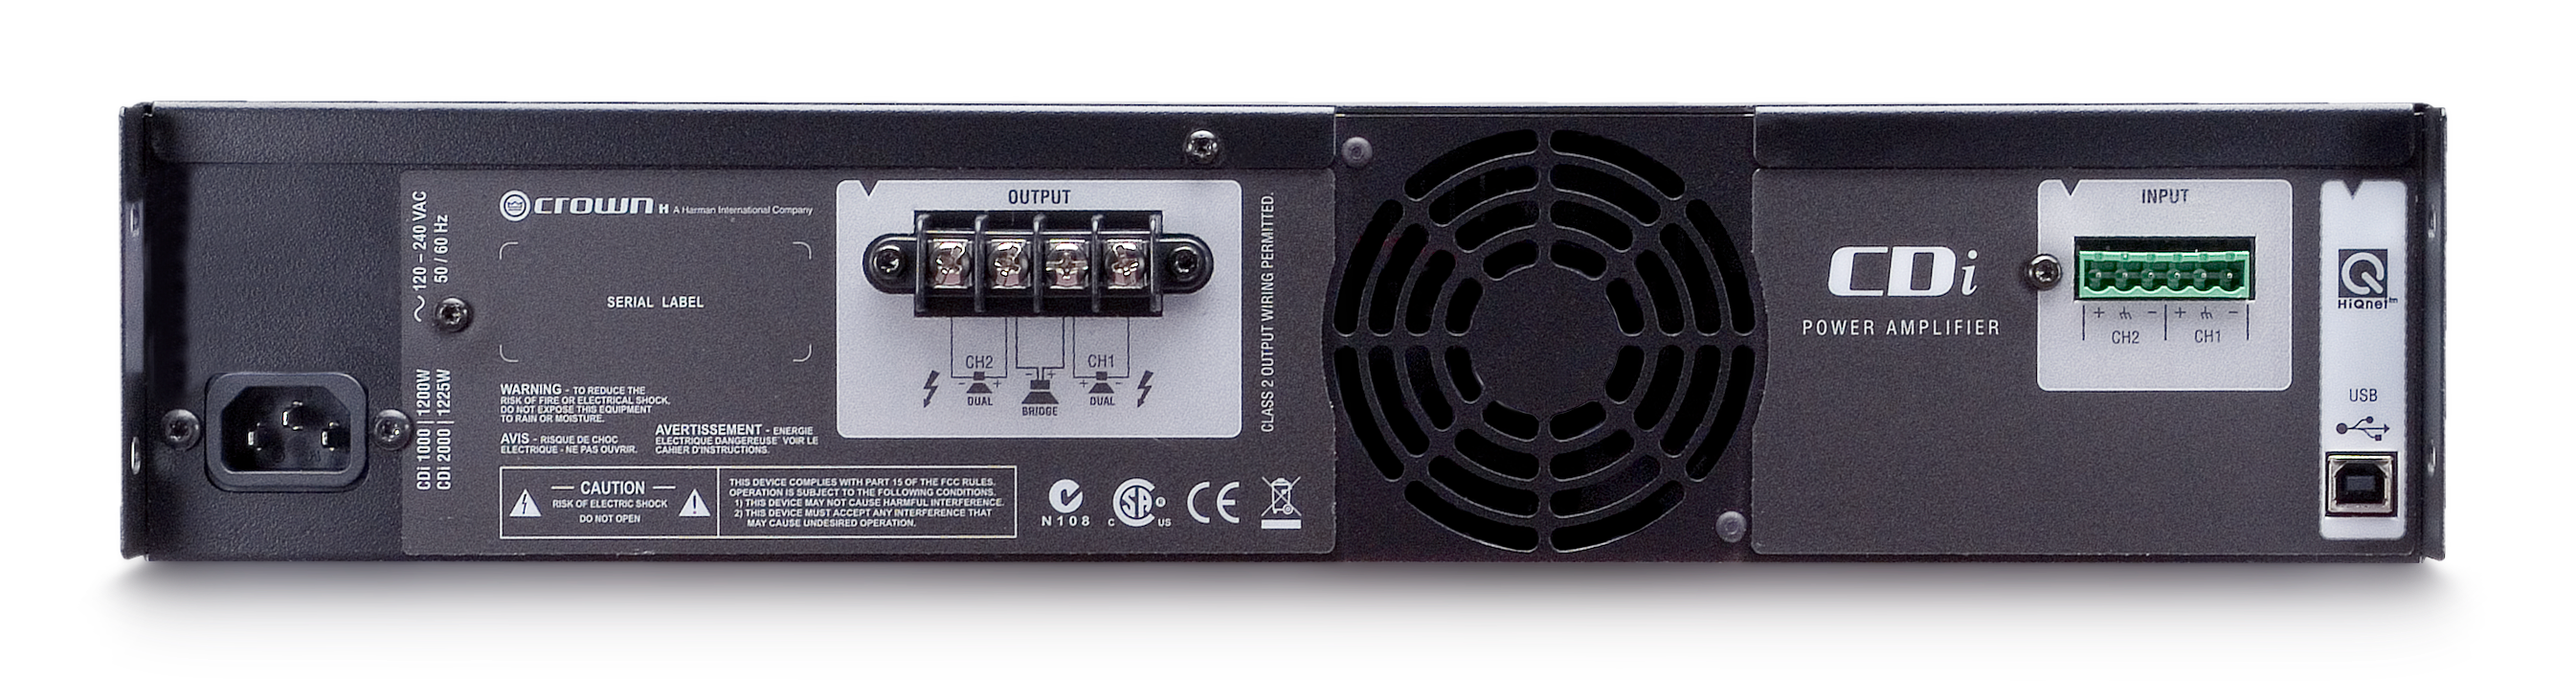 CROWN CDi 2000 Amplificador de potencia 2 canales,  800 W a 4 Ω, 70 V/140 V